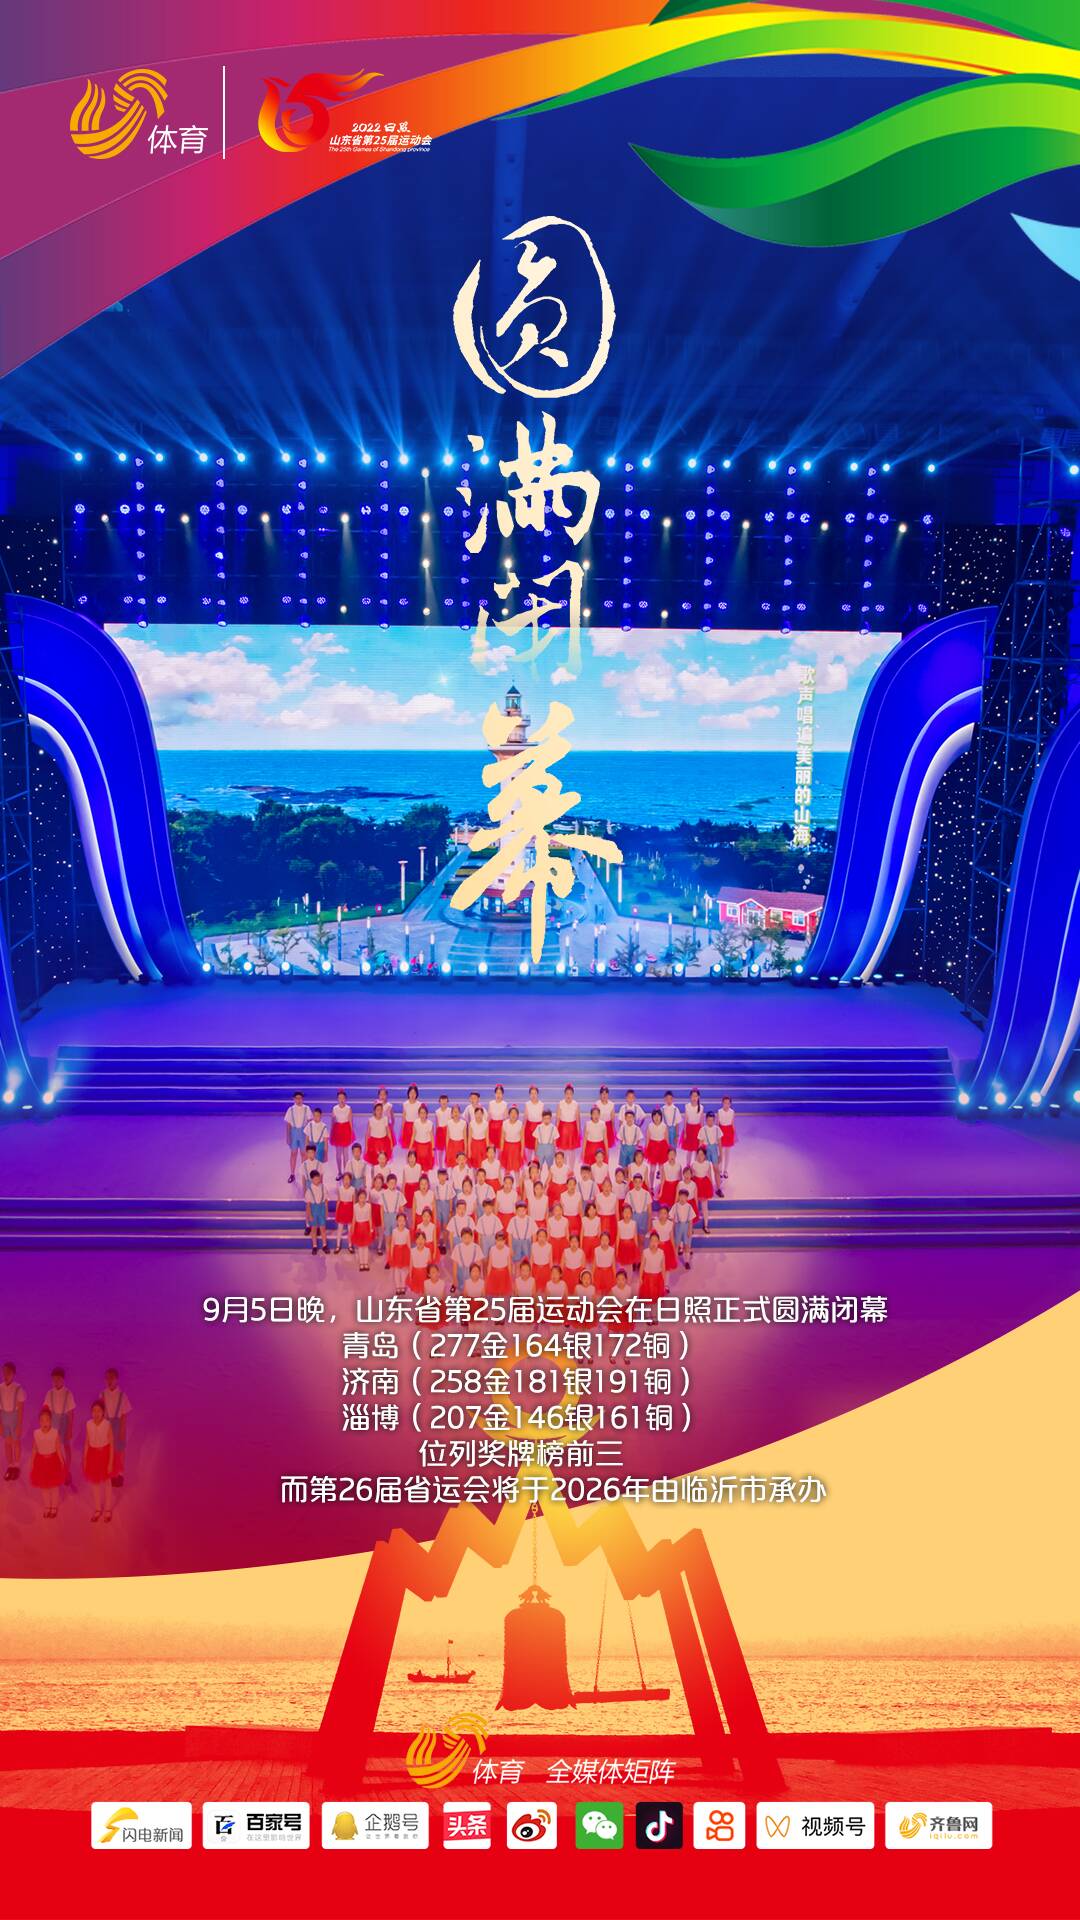 山东省第25届运动会在日照圆满闭幕，26届省运会将于2026年由临沂市承办